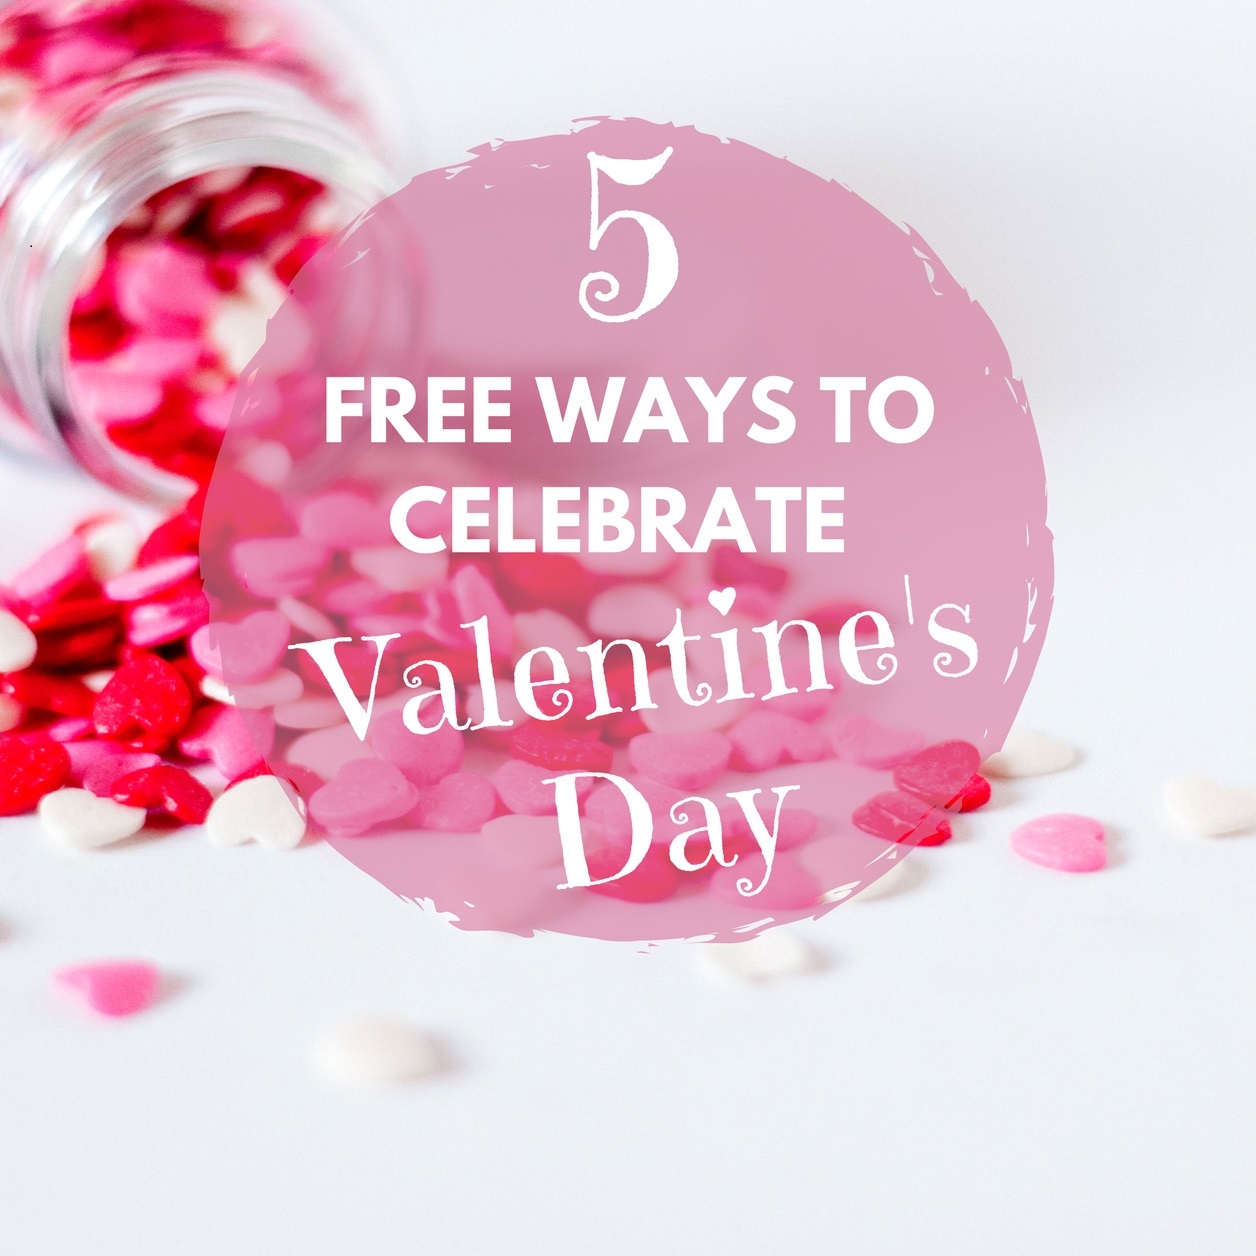 5 Free Ways to Celebrate Valentine's Day